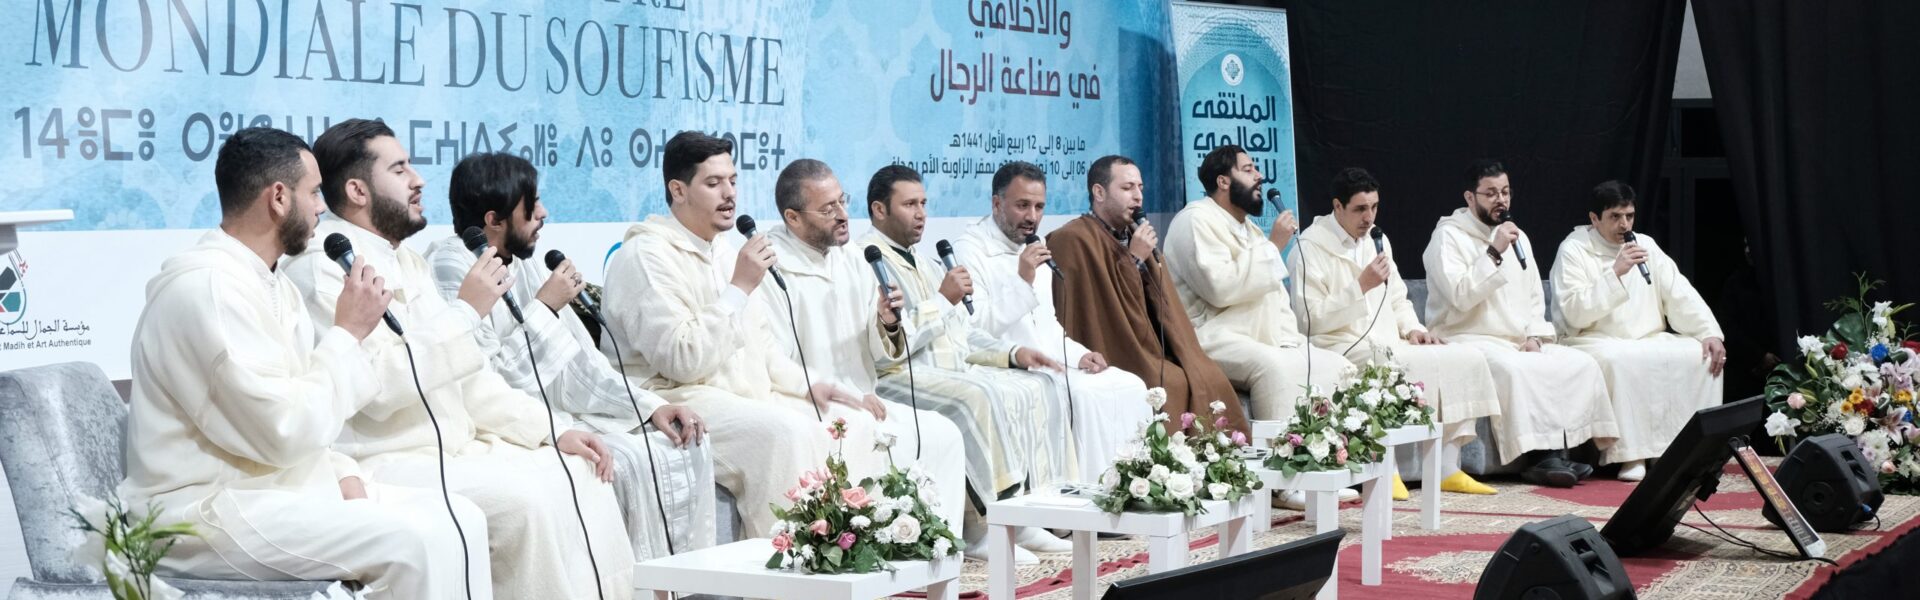 Chants Soufis 14ème Rencontre mondiale du soufisme 2020